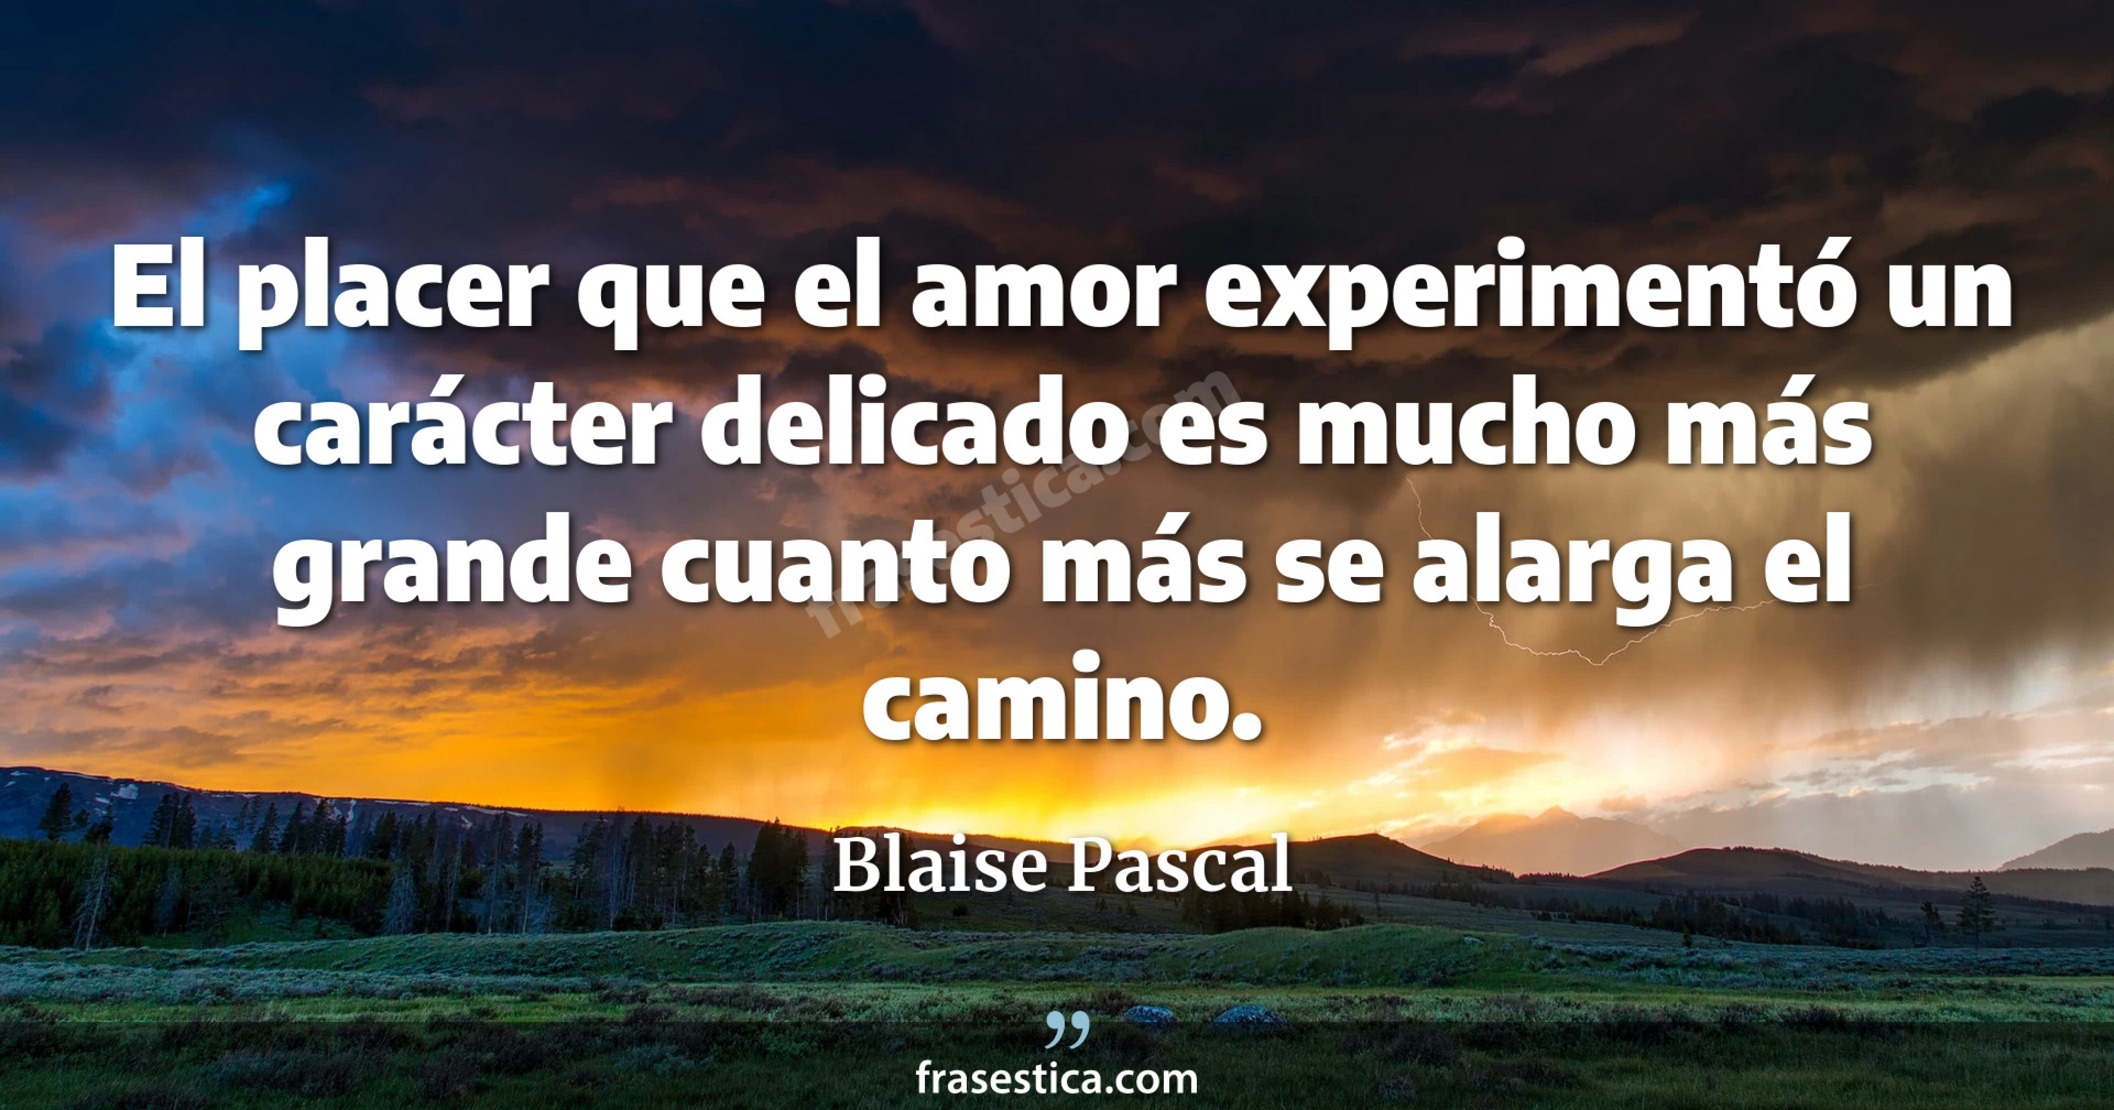 El placer que el amor experimentó un carácter delicado es mucho más grande cuanto más se alarga el camino. - Blaise Pascal